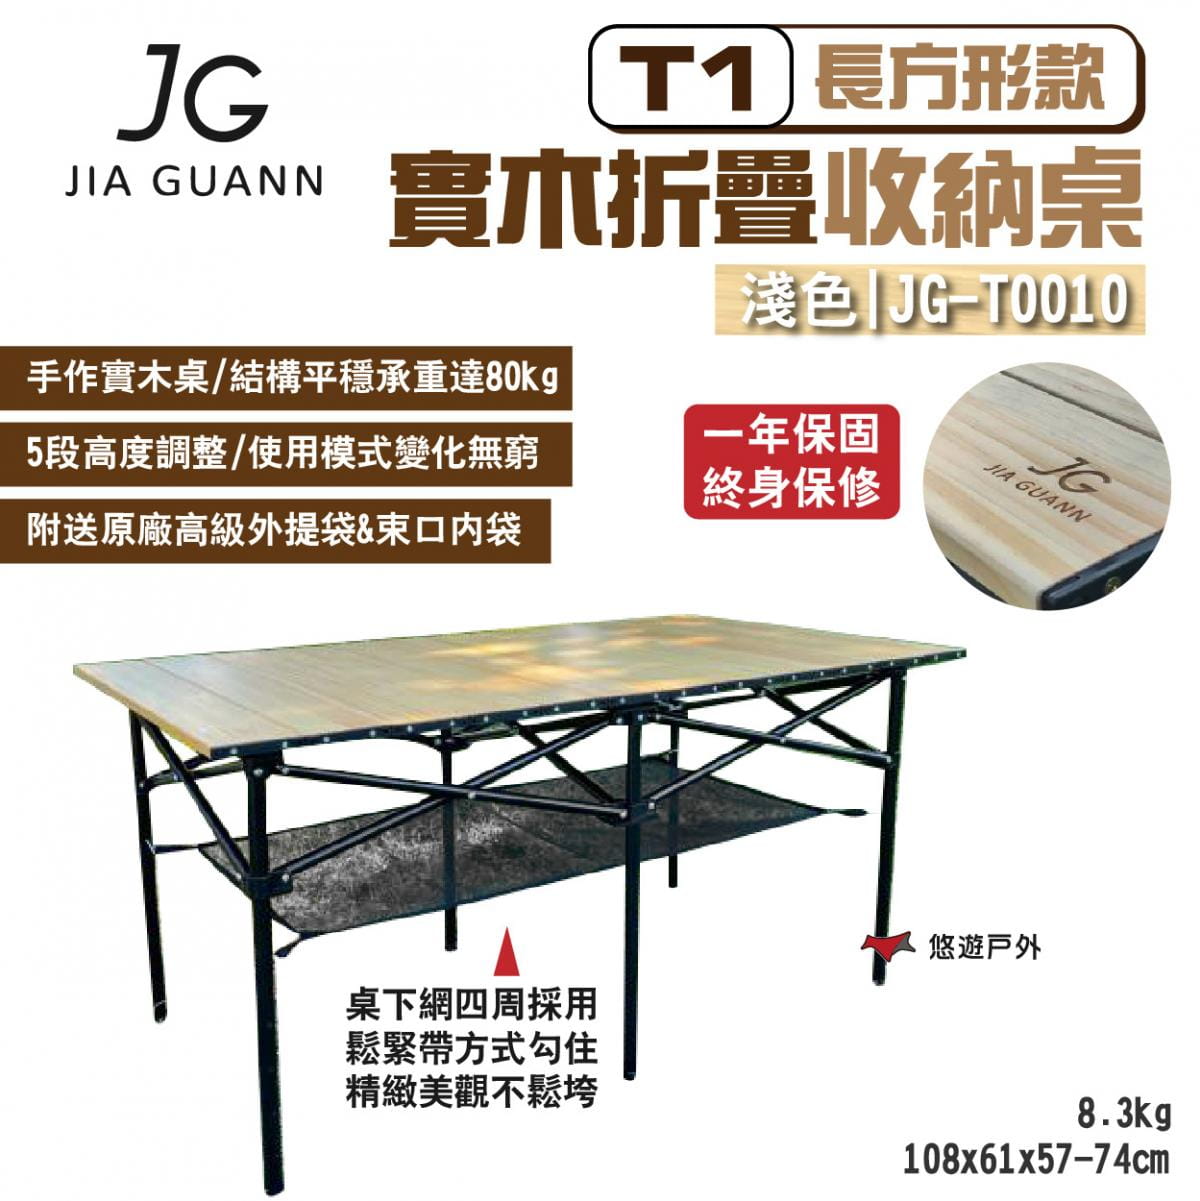 【JG Outdoor】T1實木折疊收納桌-長方形款 淺色 JG-T0010 悠遊戶外 1